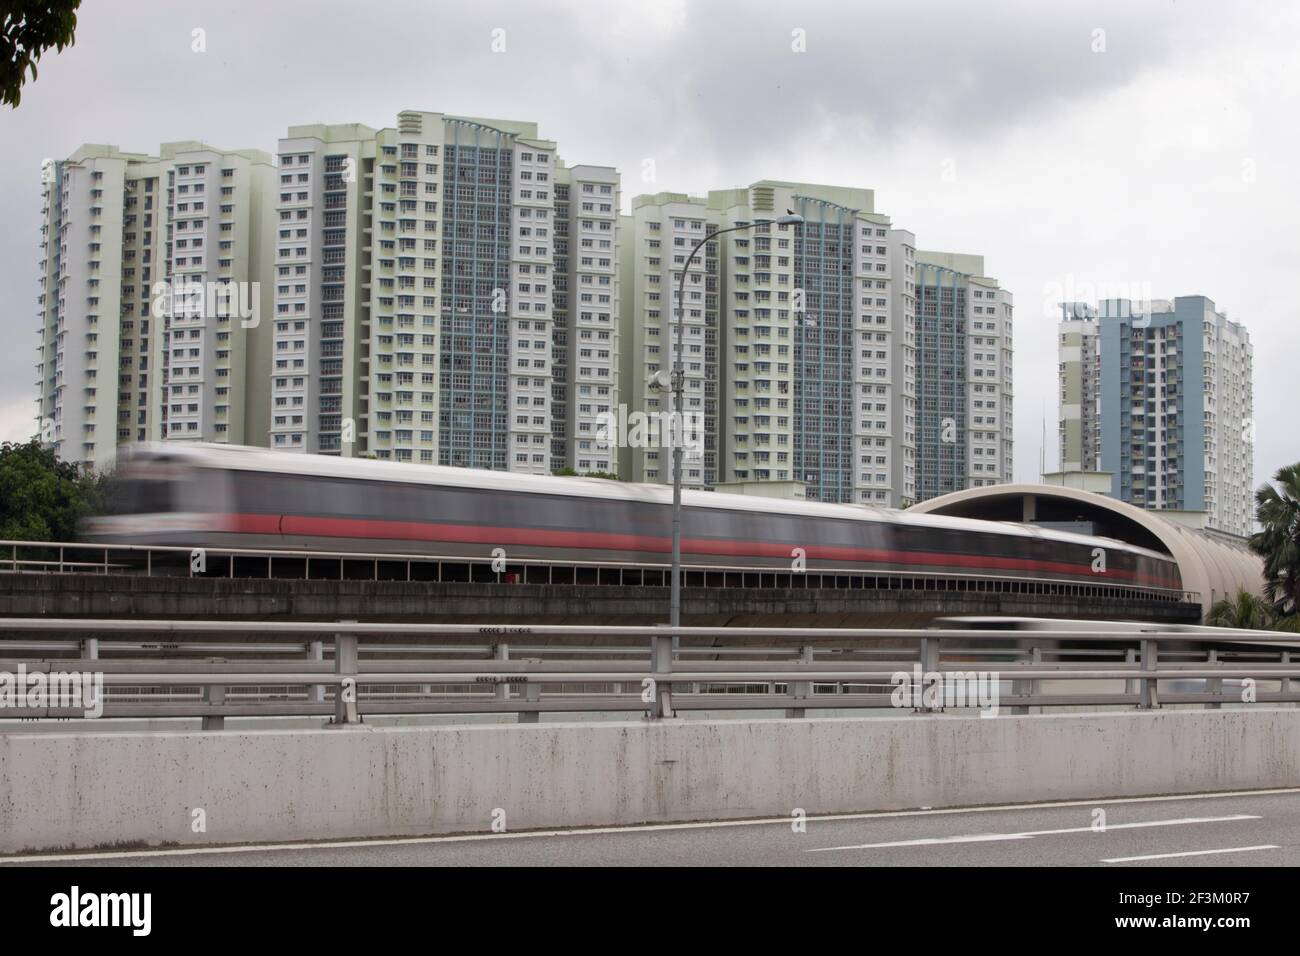 Un métro passe devant un immeuble résidentiel de la périphérie de Singapour. Banque D'Images